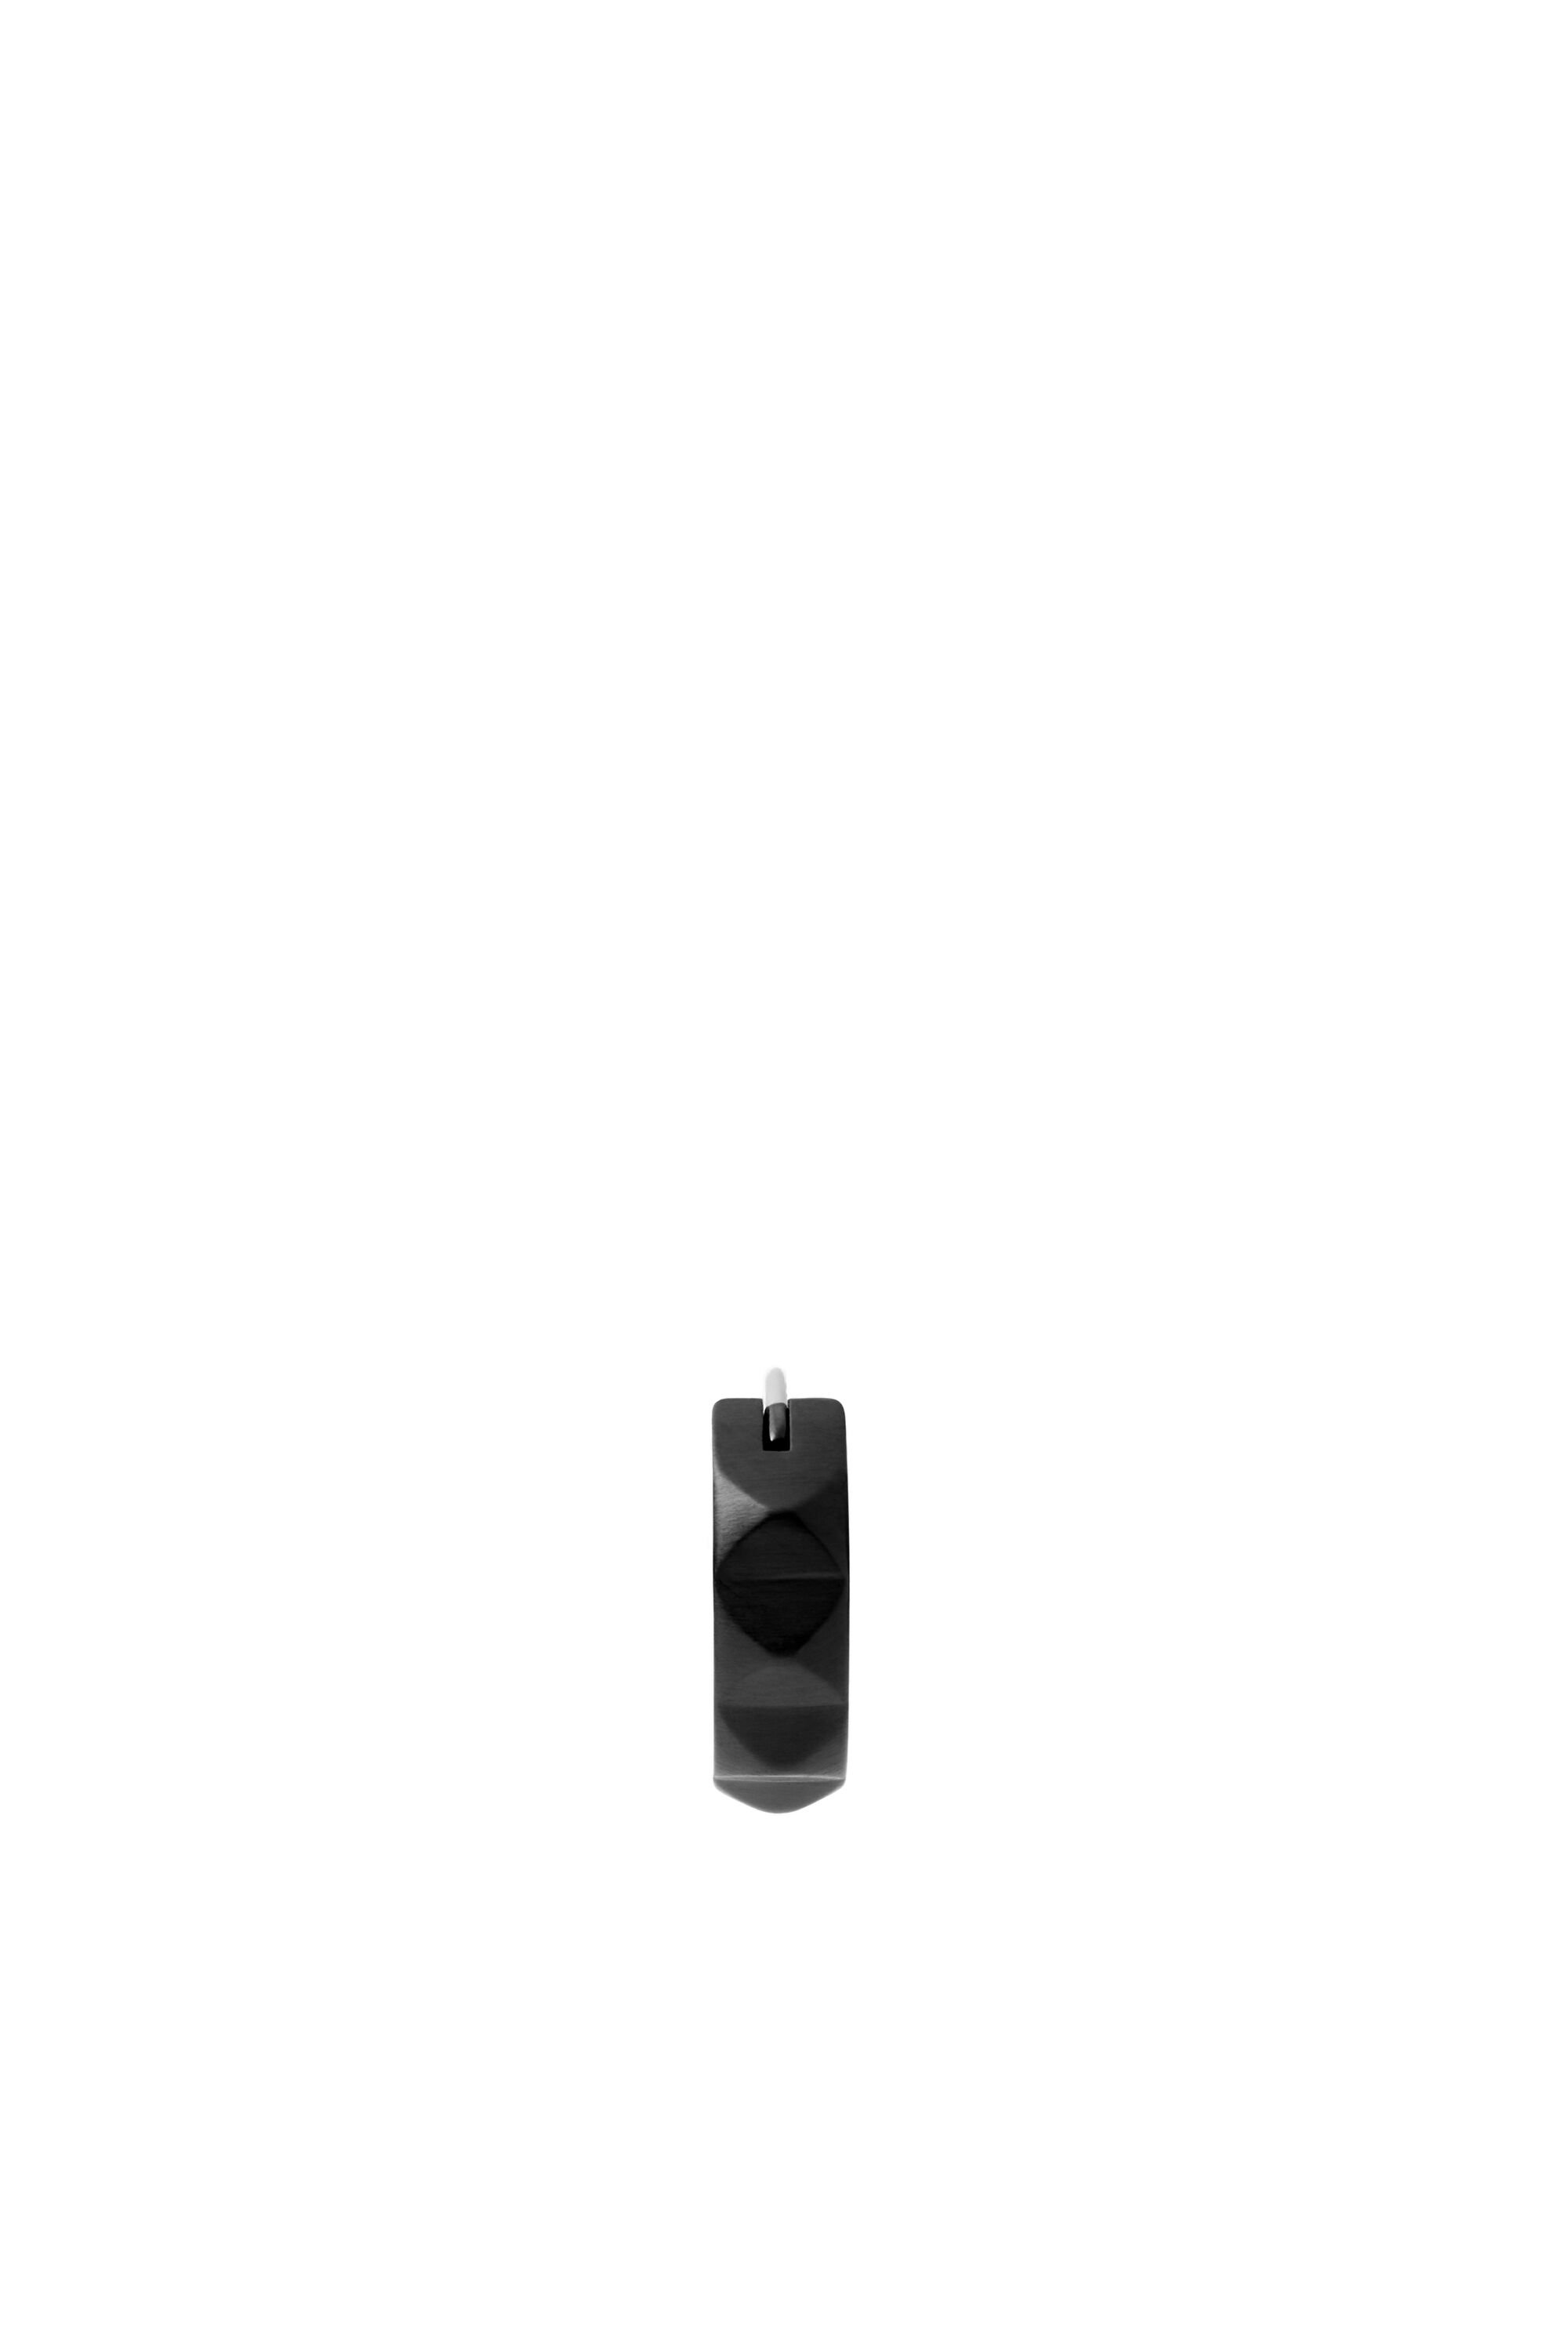 Diesel - DX1273, Man Black stainless steel studded huggie single earring in Black - Image 2